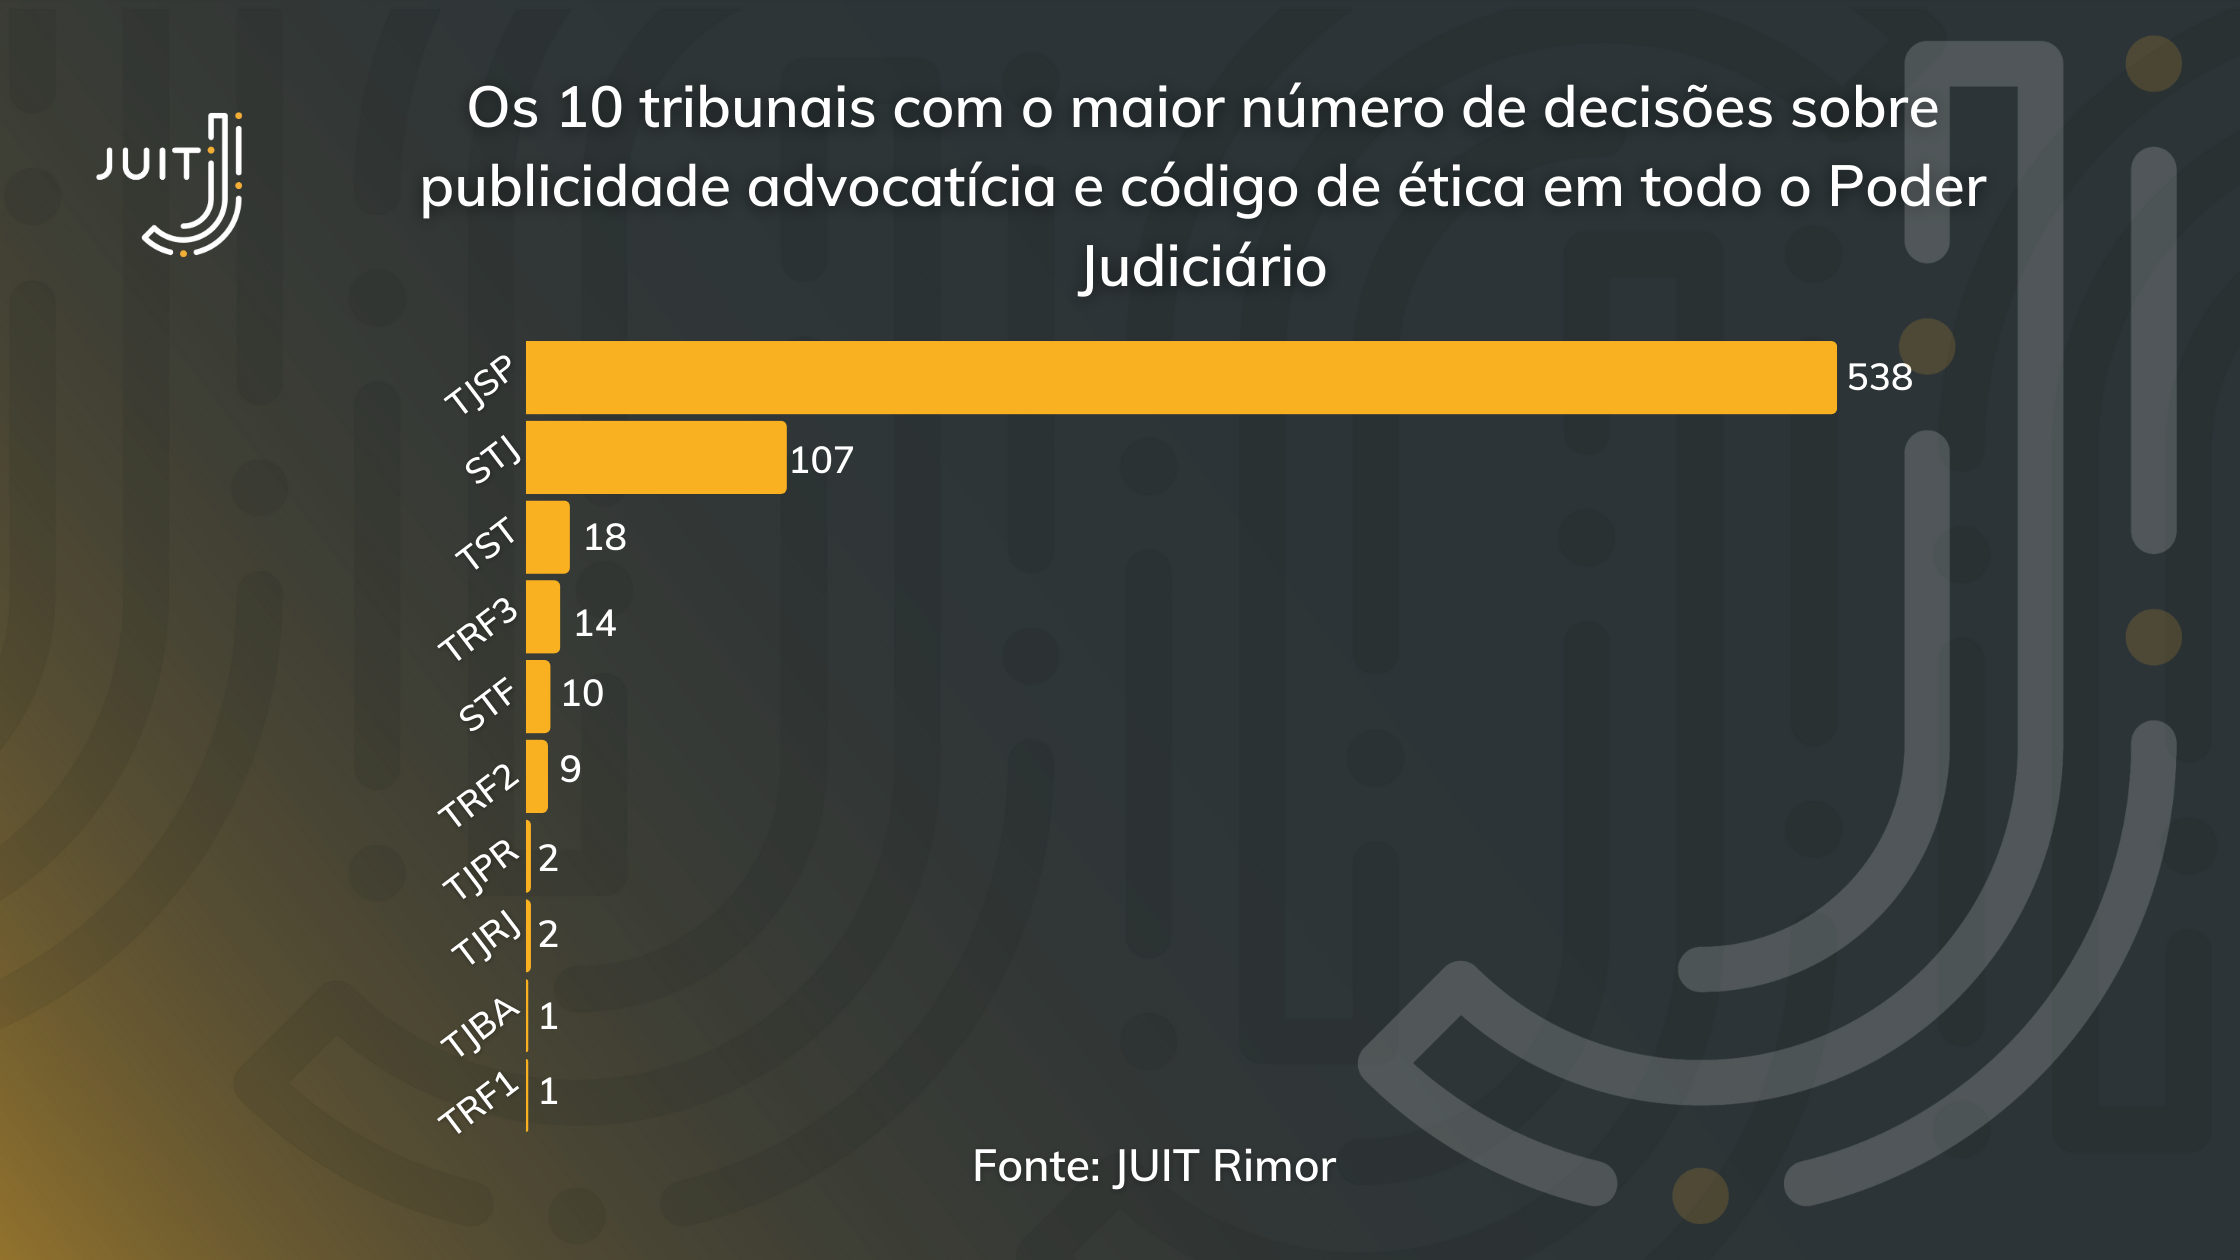 Gráfico da busca jurisprudencial do JUIT Rimor com a distribuição de julgados por tribunal